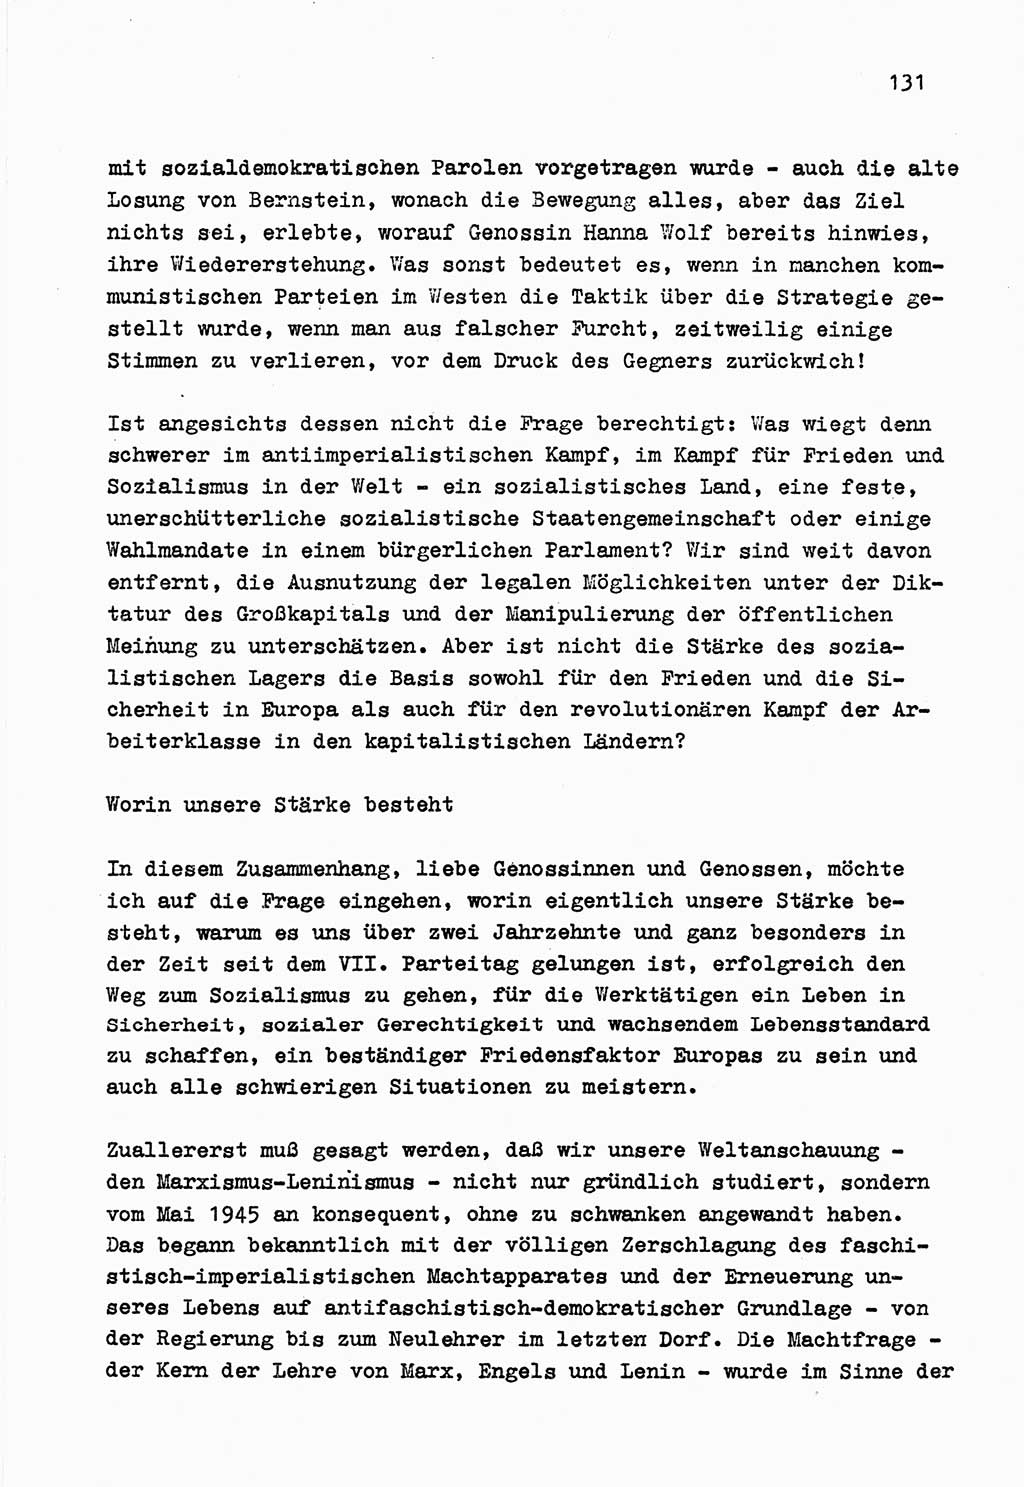 Zu Fragen der Parteiarbeit [Sozialistische Einheitspartei Deutschlands (SED) Deutsche Demokratische Republik (DDR)] 1979, Seite 131 (Fr. PA SED DDR 1979, S. 131)